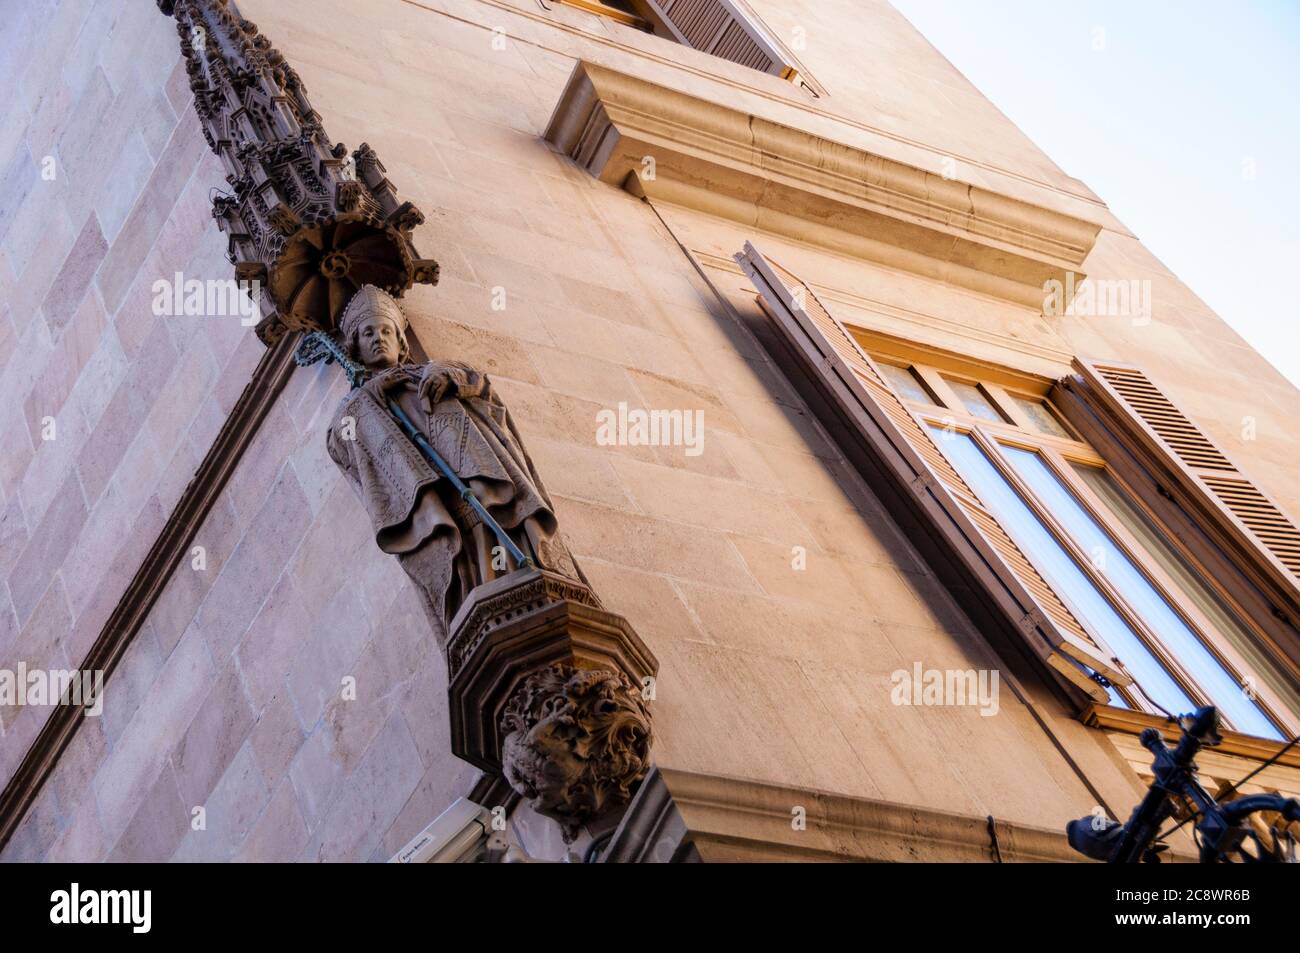 Il personale è un simbolo dell'asse che collega Dio e l'uomo visto su una cornice nel gotico barese di Barcellona, Spagna. Foto Stock